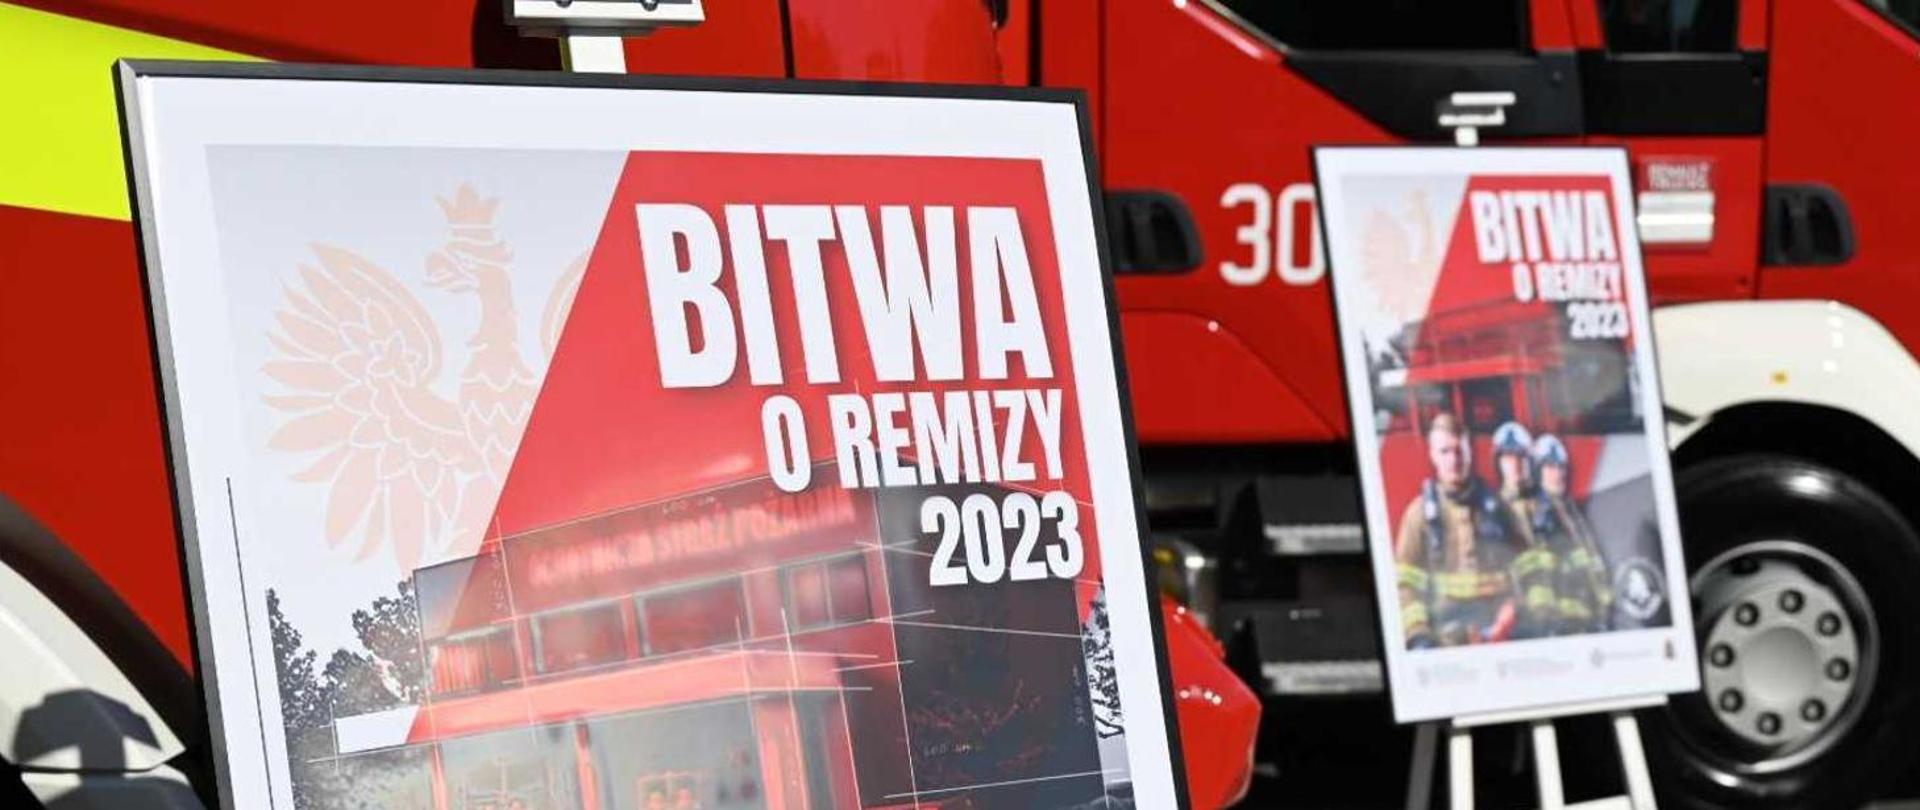 2 Plakaty "Bitwa o remizy 2023" na tle samochodu pożarniczego.